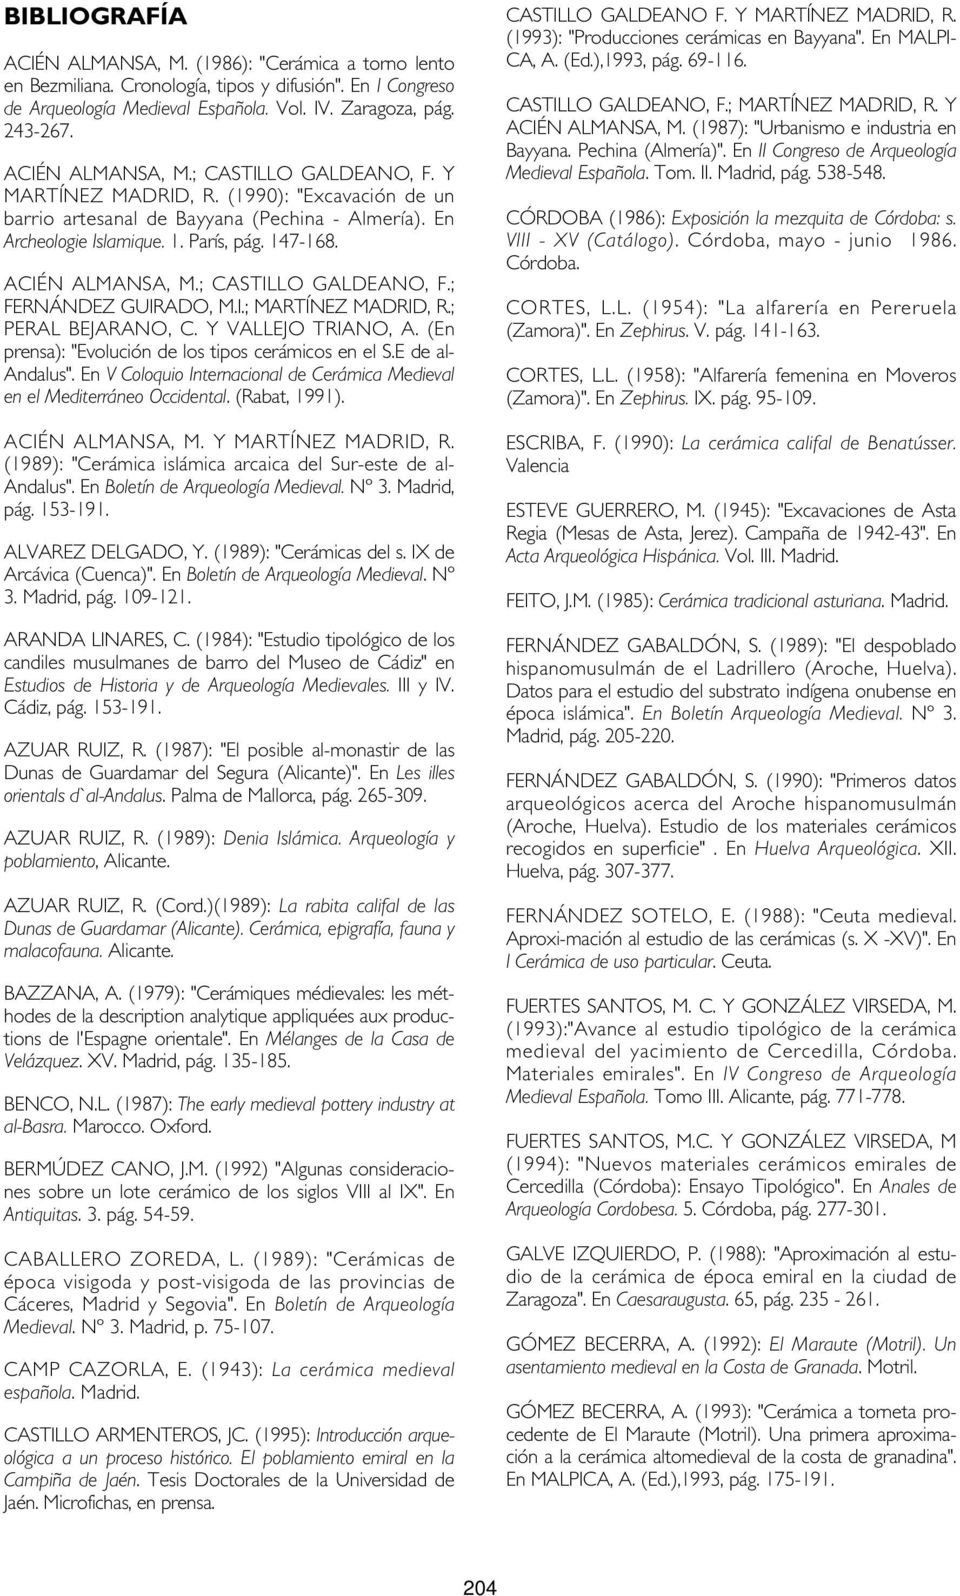 ACIÉN ALMANSA, M.; CASTILLO GALDEANO, F.; FERNÁNDEZ GUIRADO, M.I.; MARTÍNEZ MADRID, R.; PERAL BEJARANO, C. Y VALLEJO TRIANO, A. (En prensa): "Evolución de los tipos cerámicos en el S.